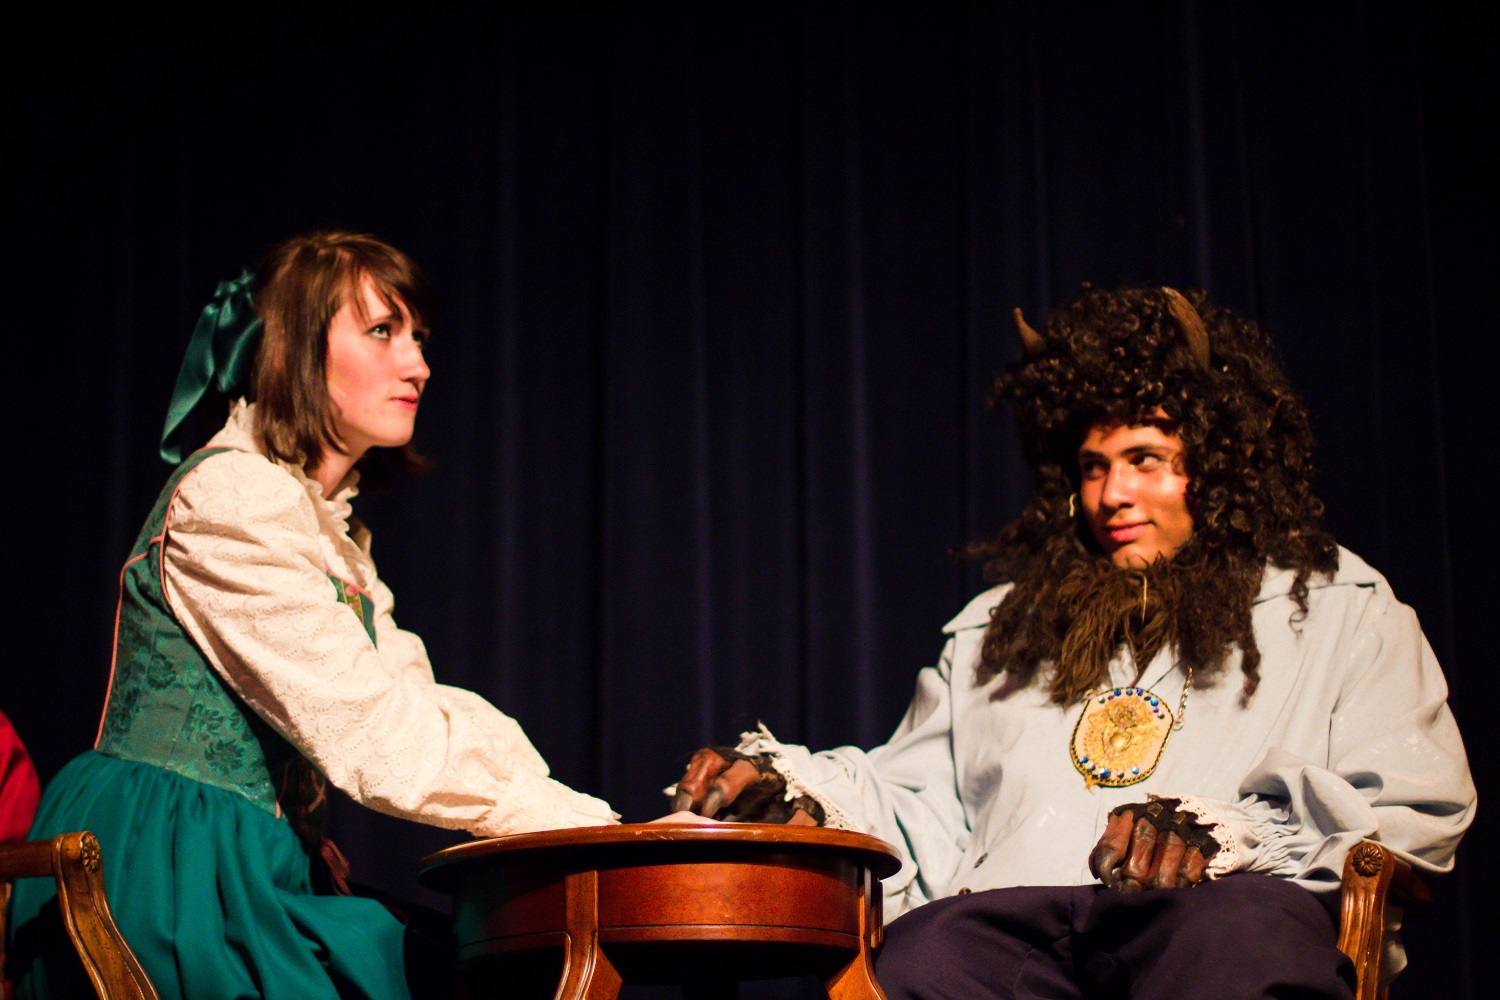 Beauty and the Beast - Eddie Nixon as Beast and Katlyn Hammerling as Belle - Yosemite High School Apr 26 2014 - photo by Virginia Lazar